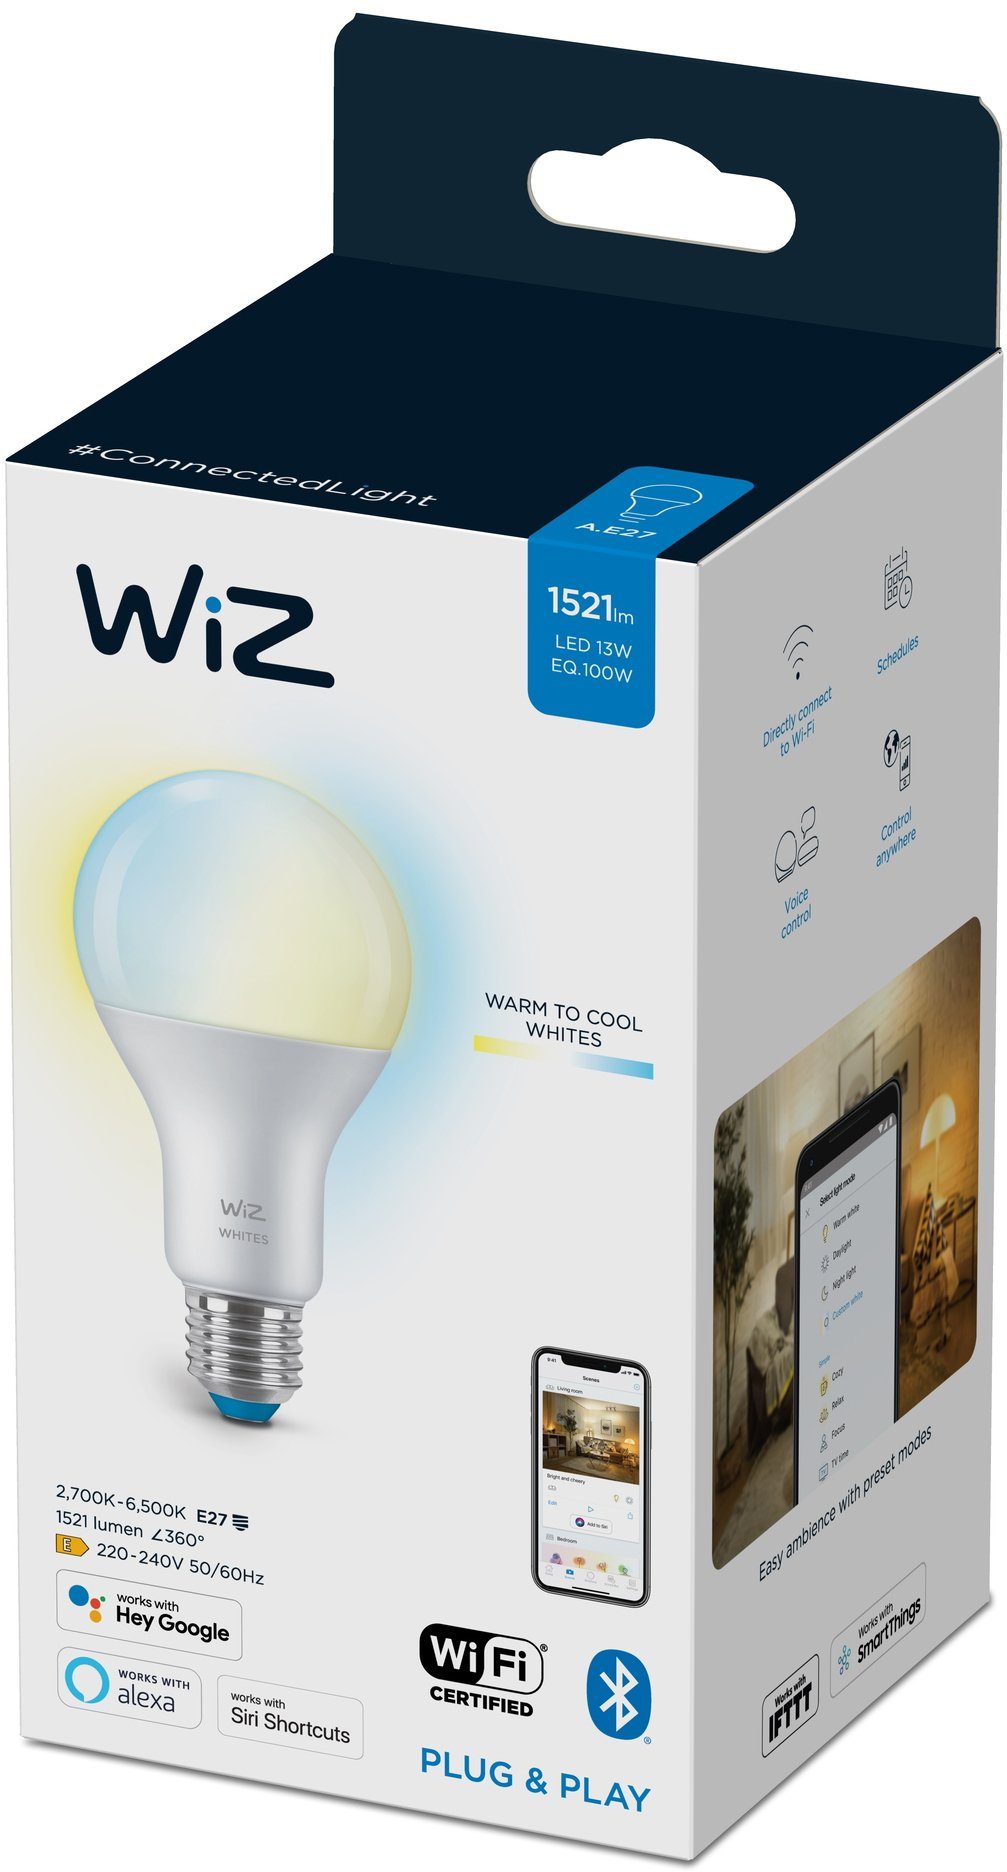 WiZ LED-Leuchtmittel White 100W E27 Standardform Tunable matt Einzelpack, E27, 1 St., Warmweiß, Kreieren Sie mit Wiz Tunable White LED Lampen smarte Beleuchtung